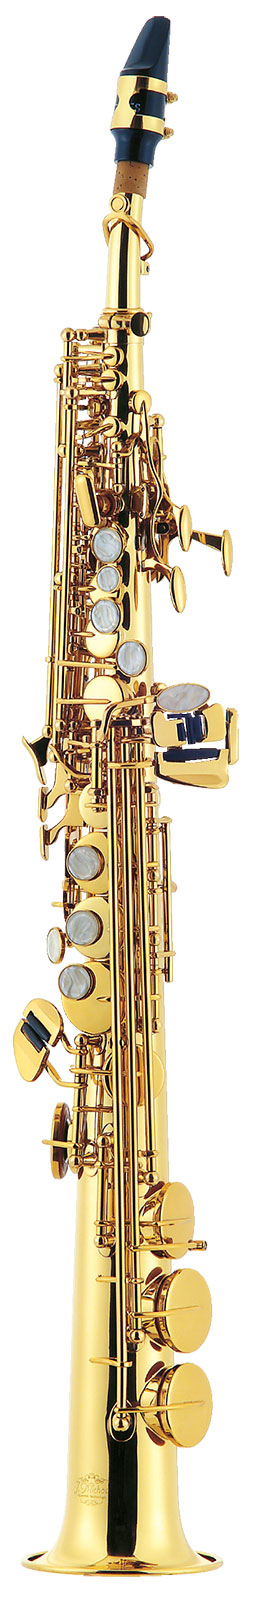 J.MICHAEL SP-650 (S) Soprano Saxophone